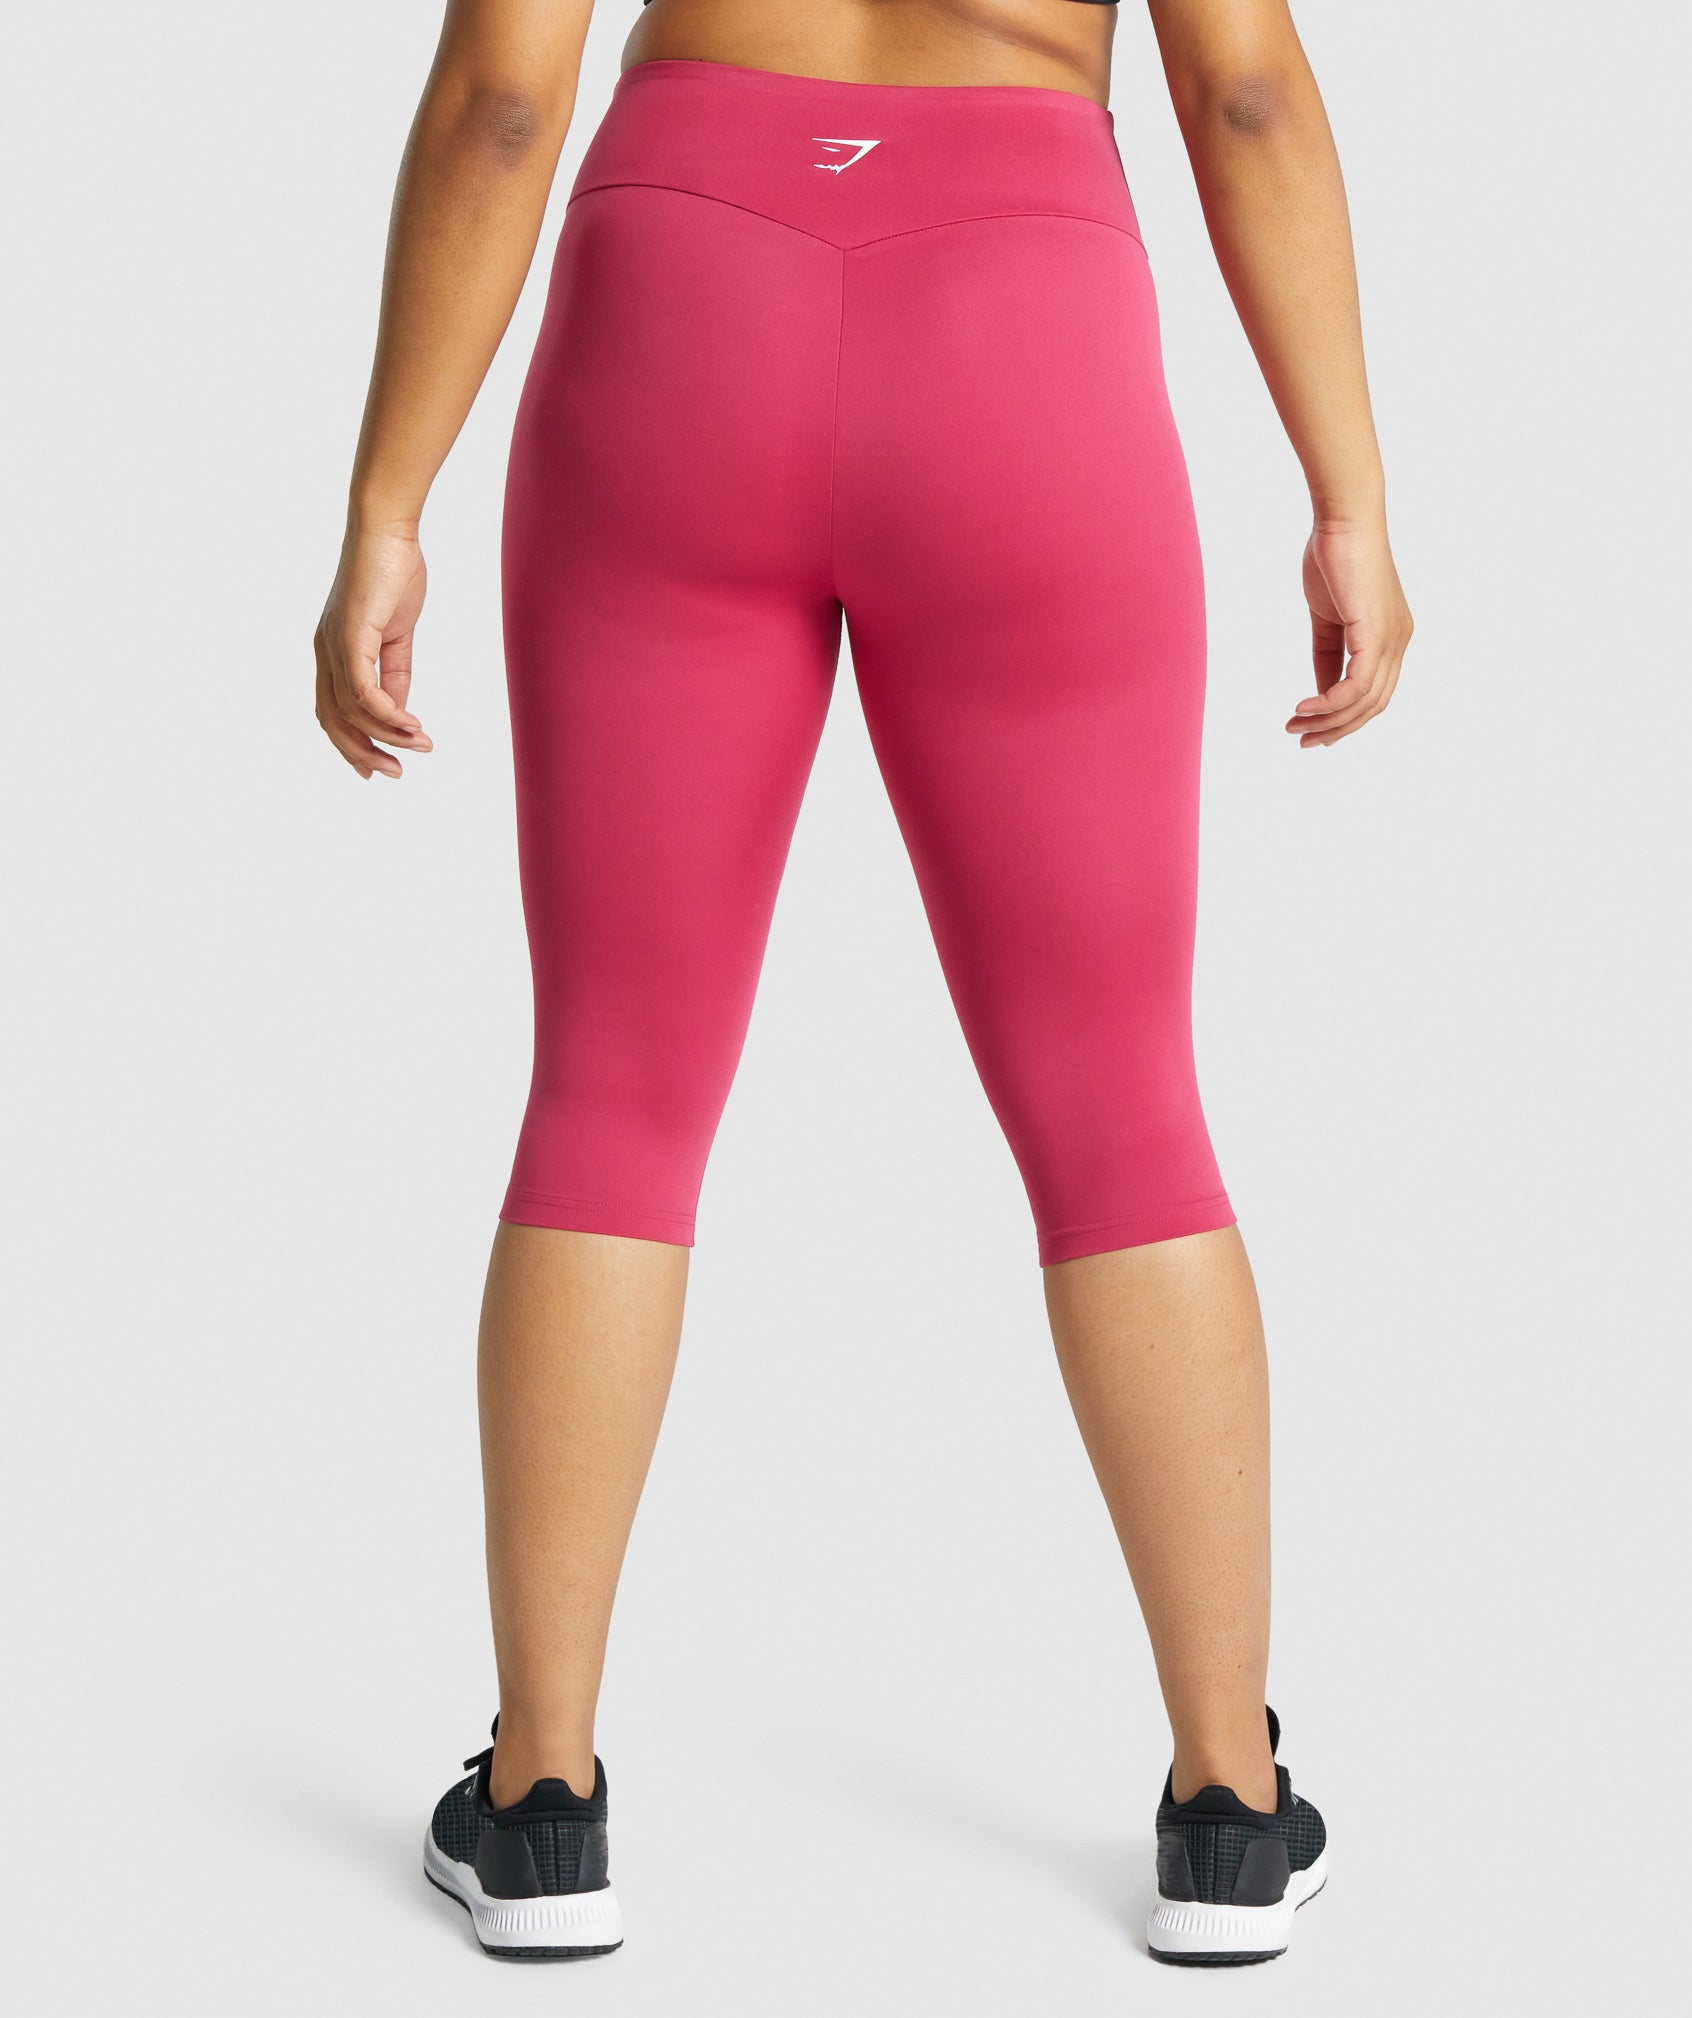 Gymshark Women's Leggings M Pink Nylon with Elastane